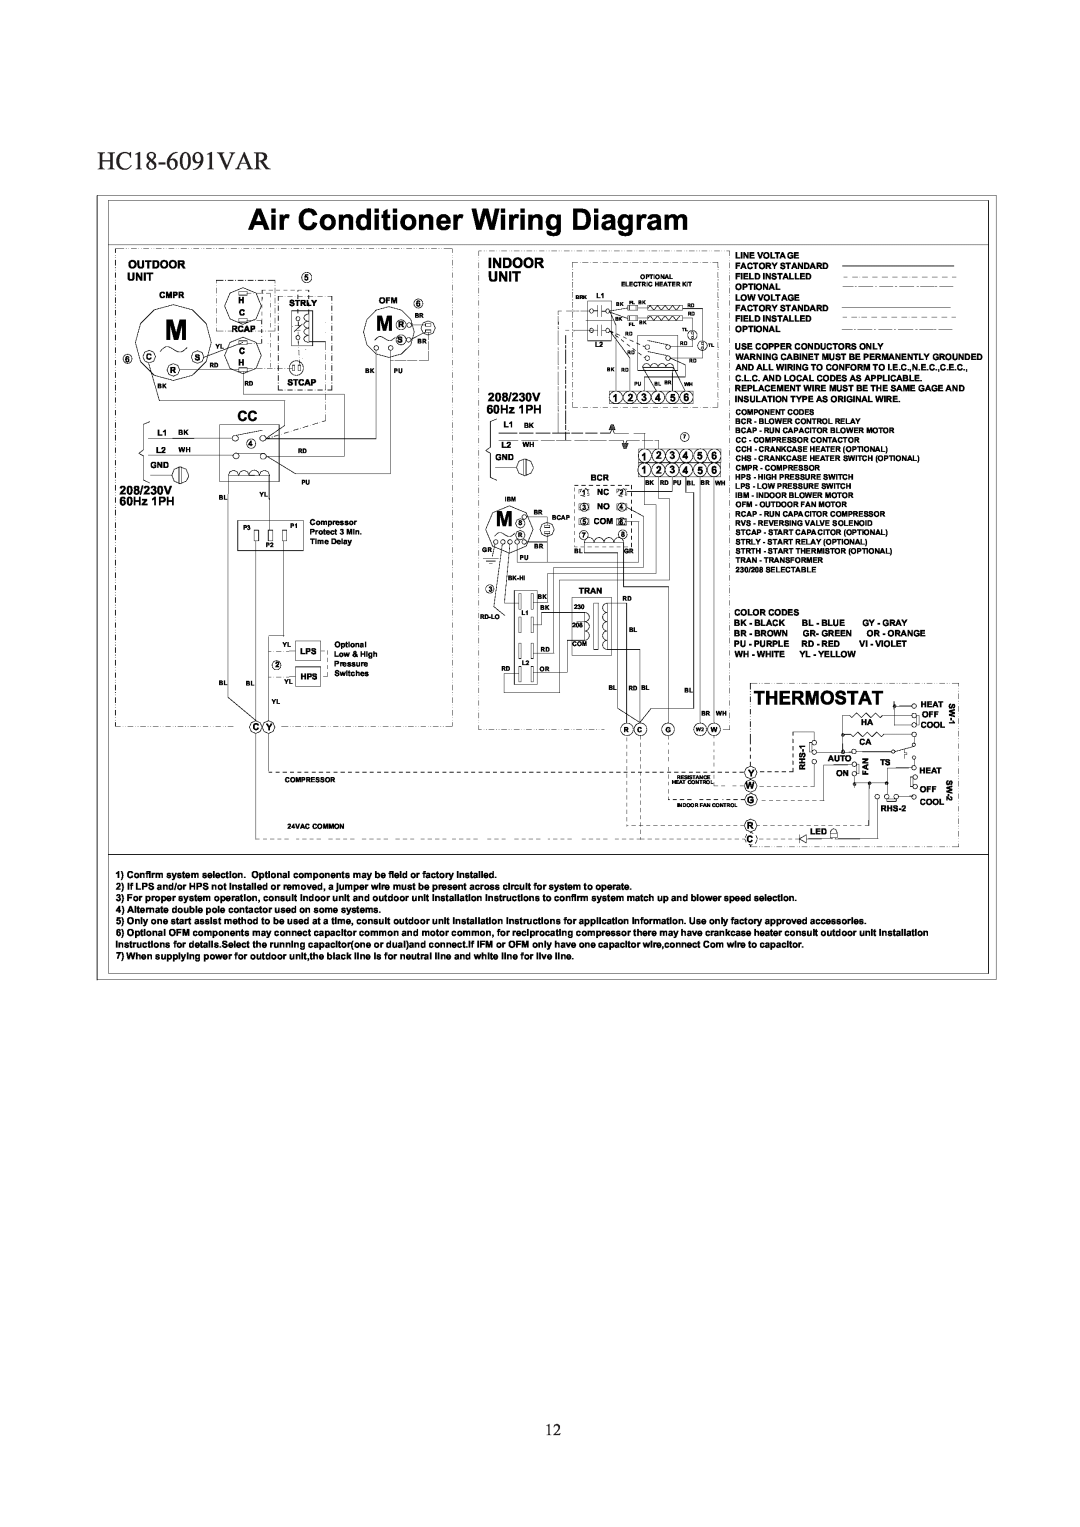 Haier HC1891VAR operation manual HC18-6091VAR, Air Conditioner Wiring Diagram, 208/230V, 60Hz 1PH 